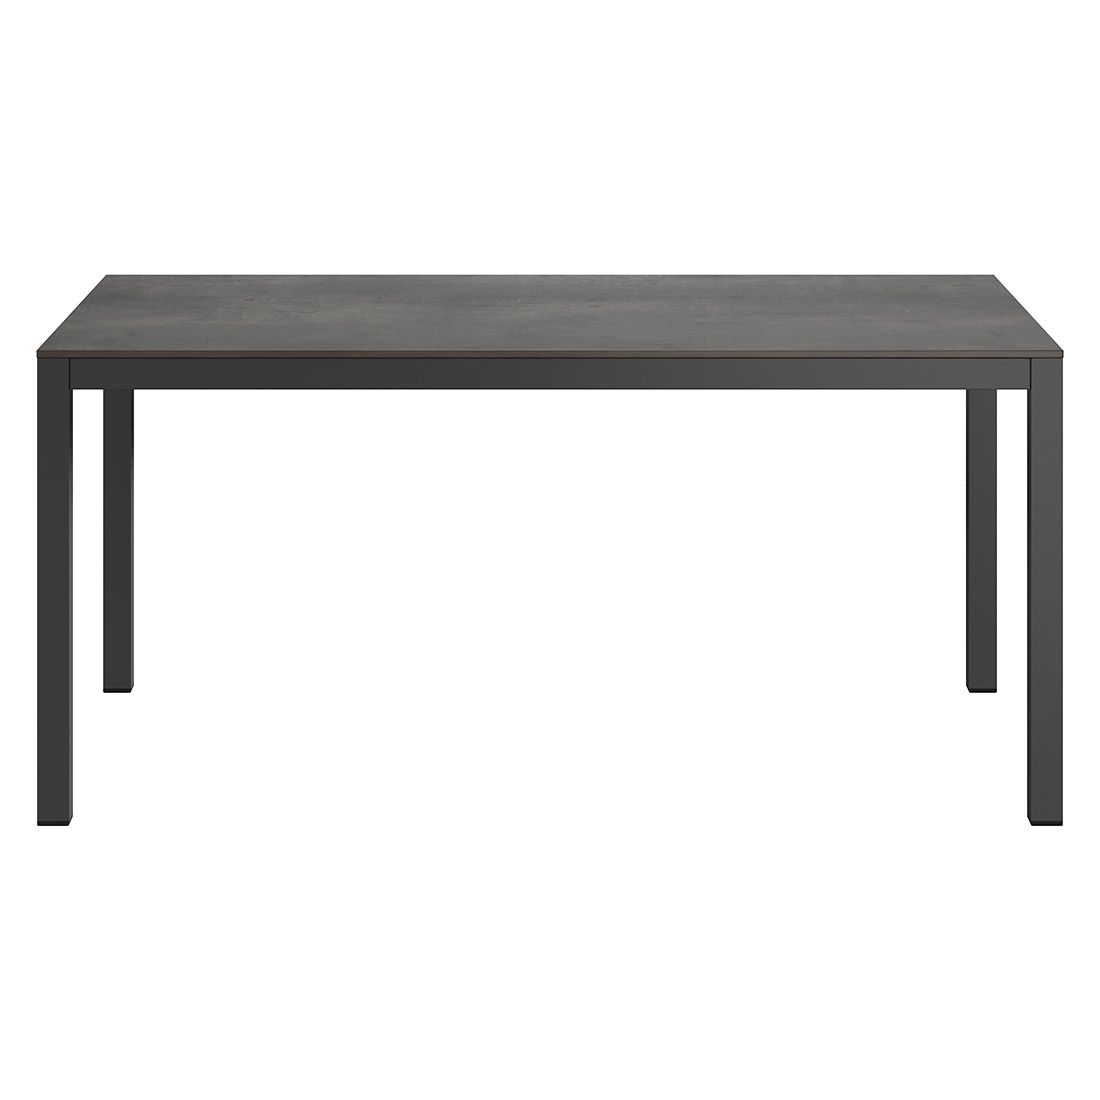 MWH Elements Gartenmöbel-Set 5-tlg. mit Tisch 160x90cm